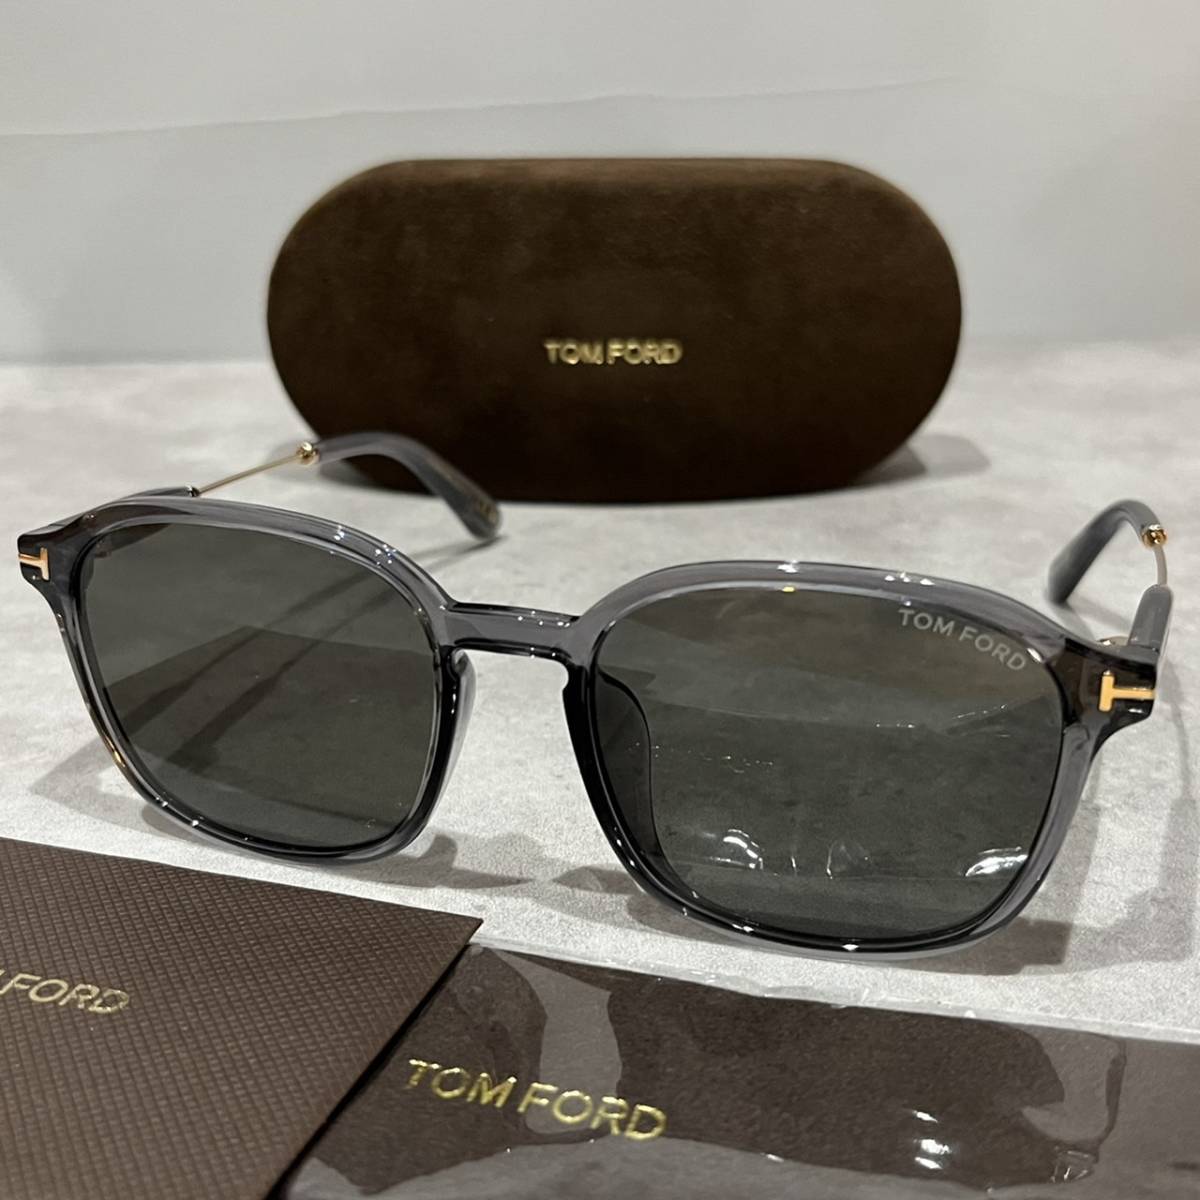 【送料無料】【正規品・新品】TOMFORD トムフォード TF893 FT893 20A イタリア製 サングラス メガネ 眼鏡 メンズ レディース